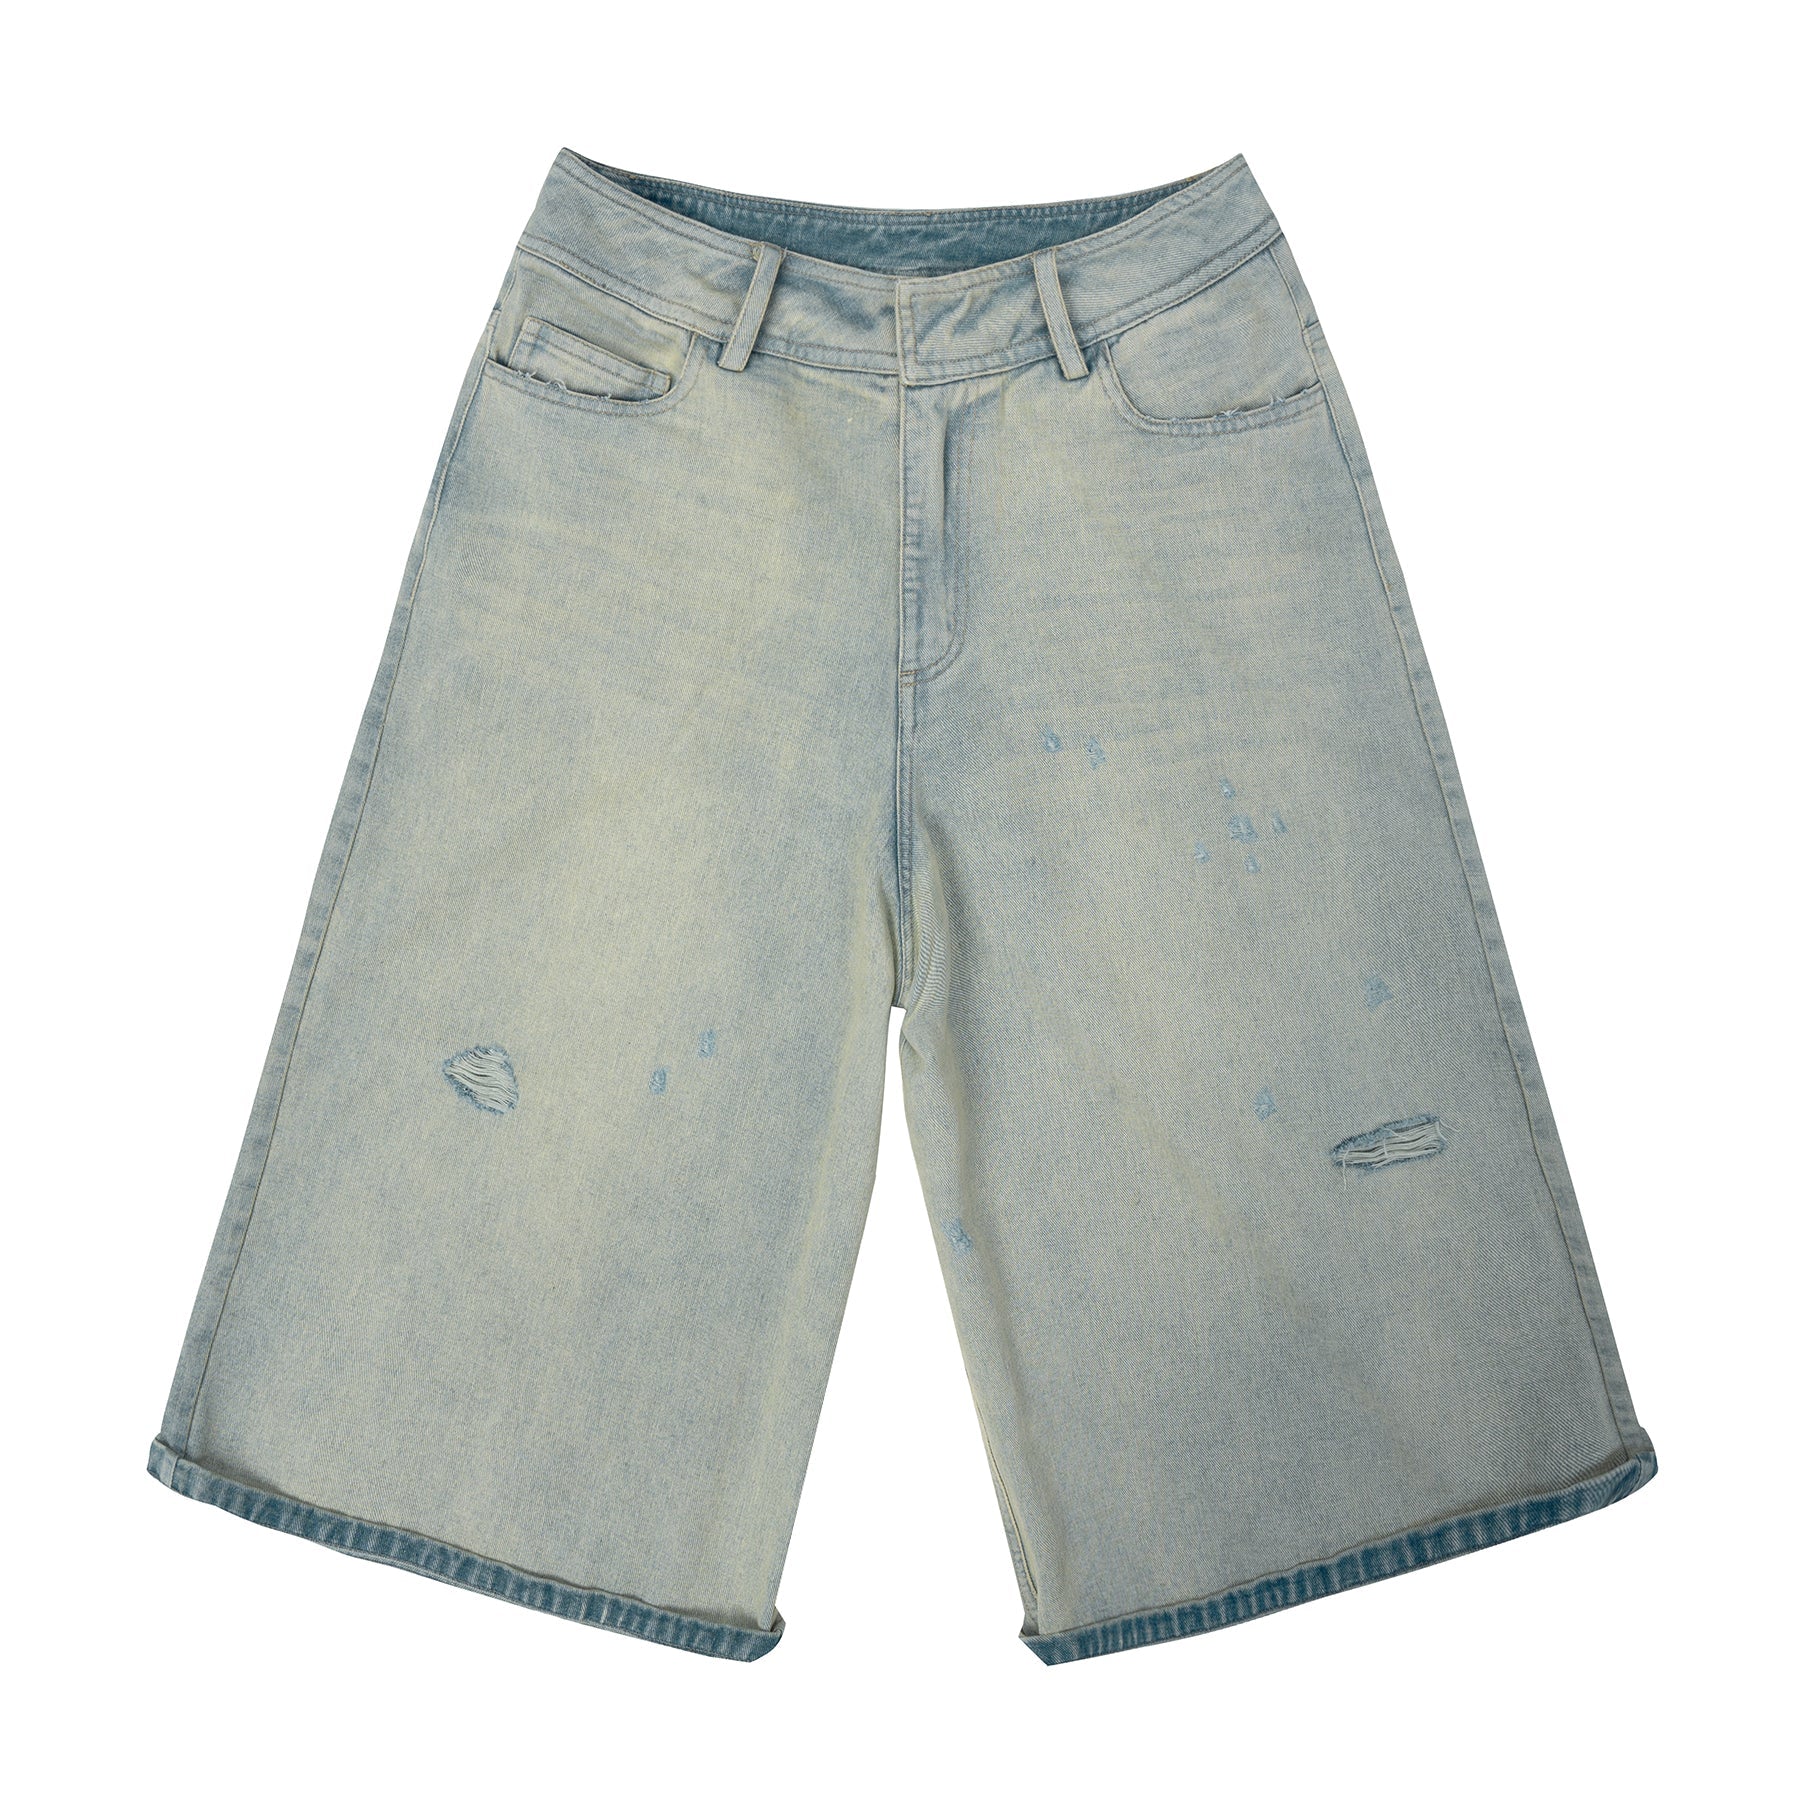 Washed Distressed Hole Denim Shorts - chiclara